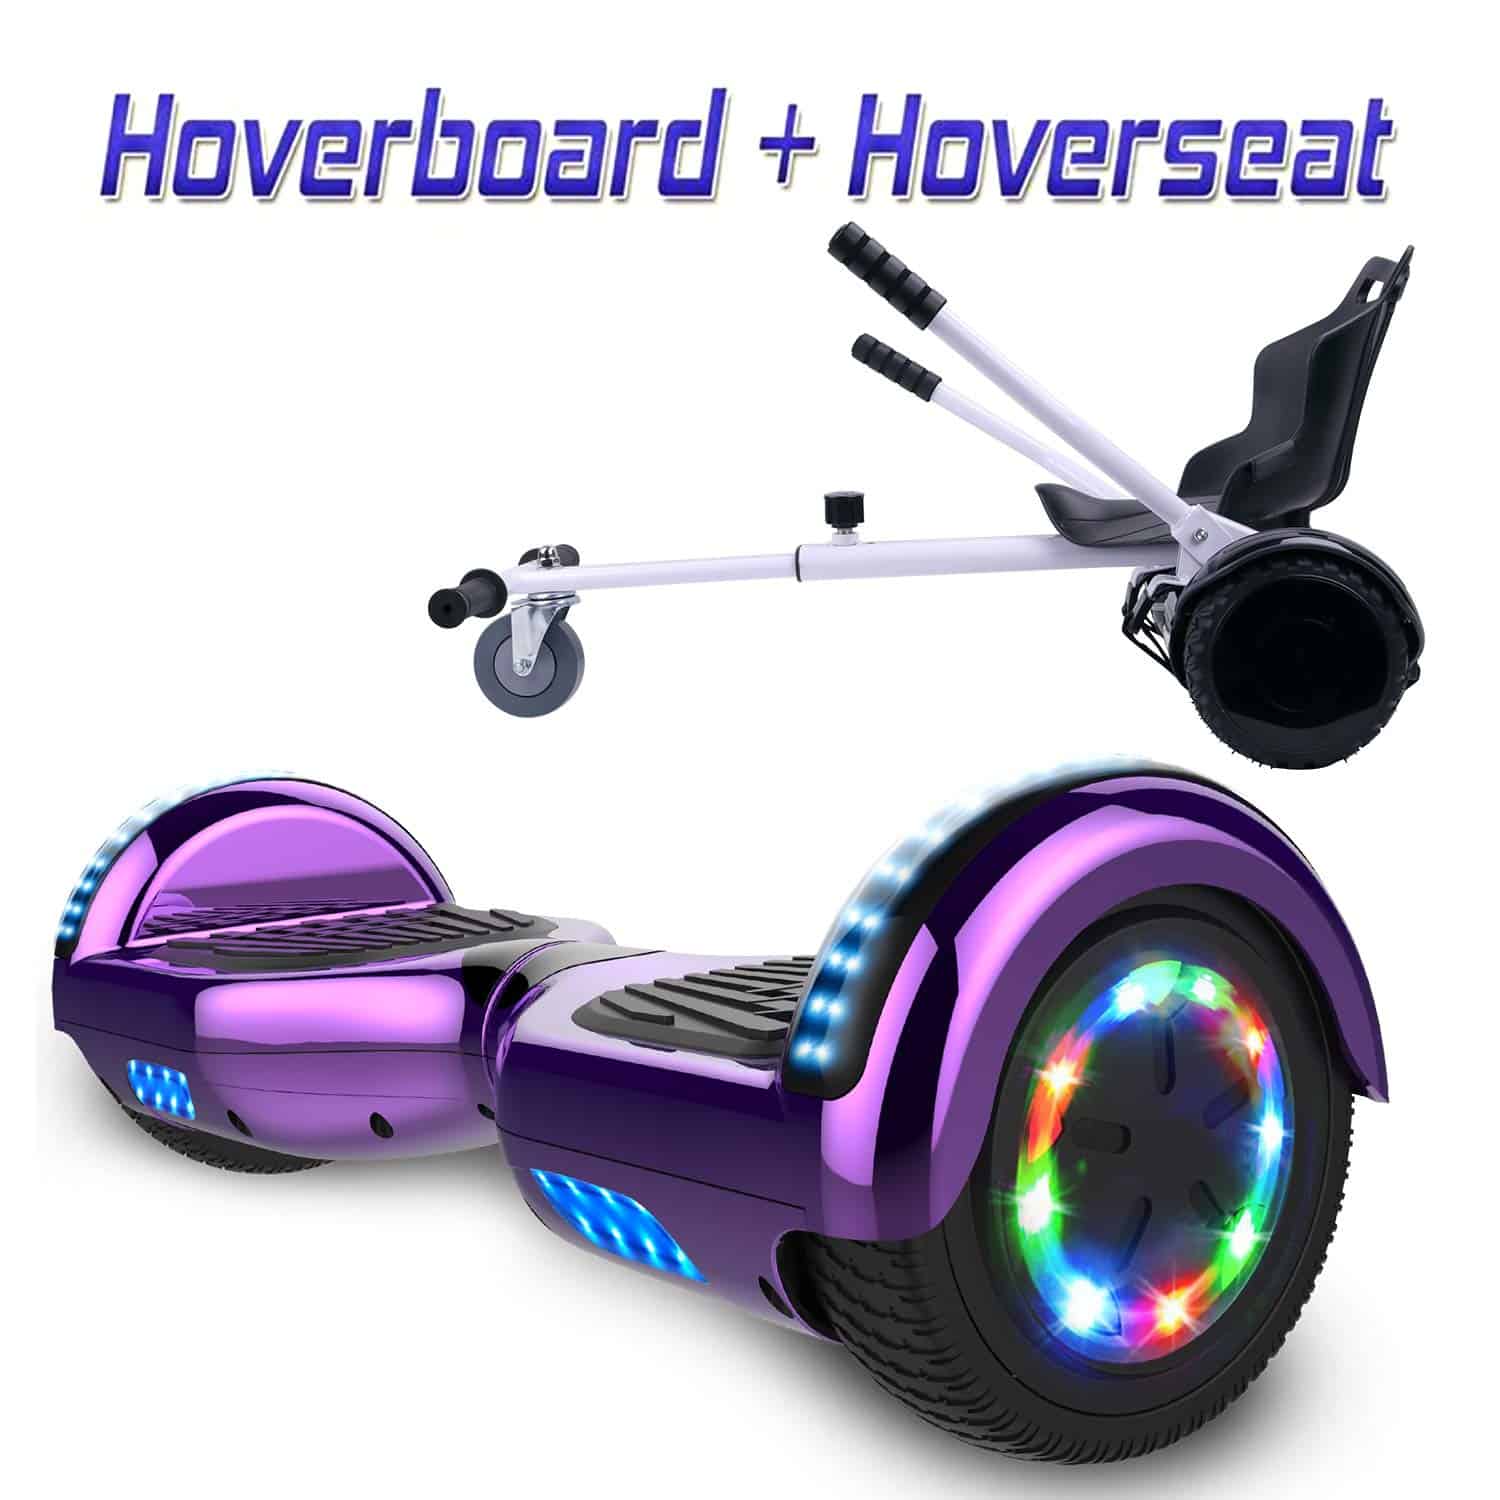 Combinación de hoverboard de colorway hoverboard